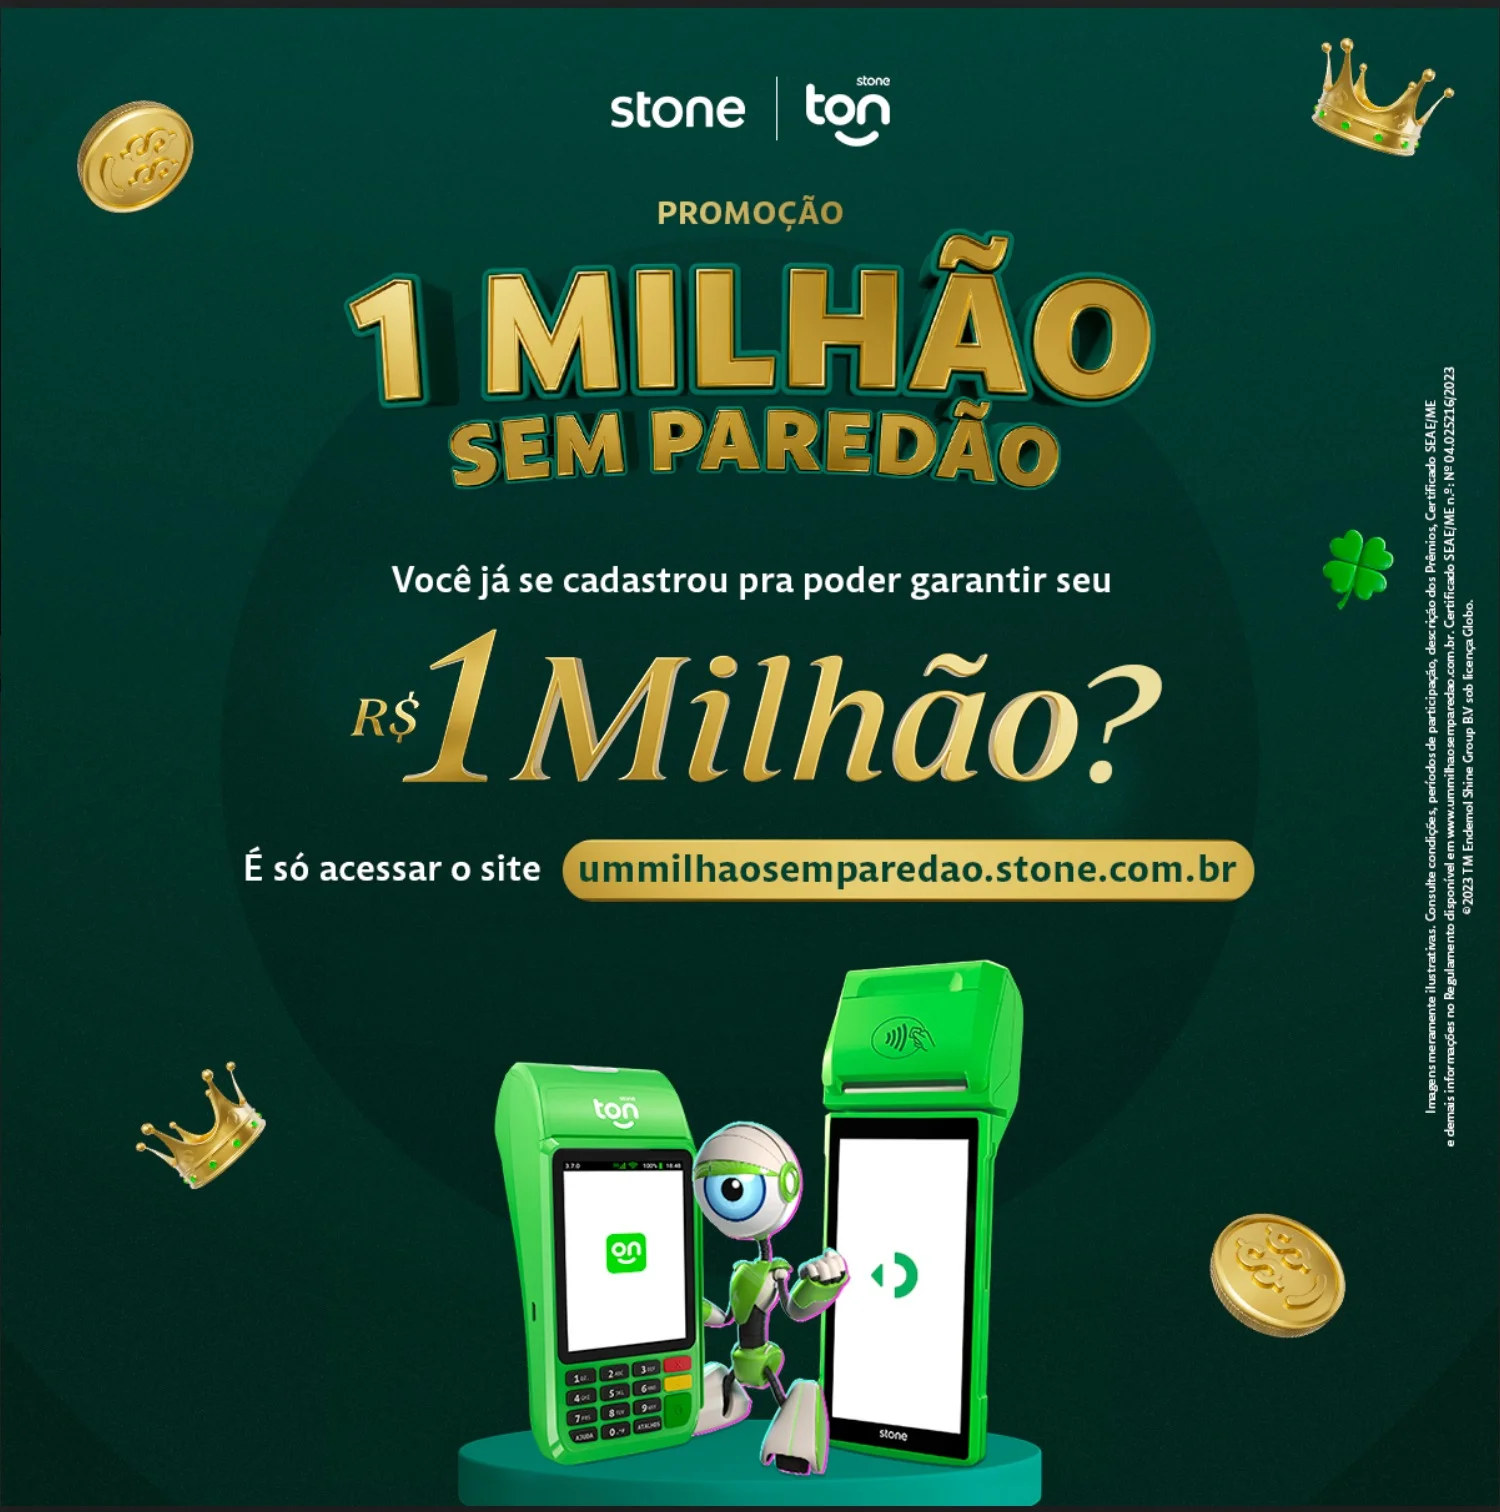 Toddynho lança promoção que sorteará 400 mil reais em prêmios